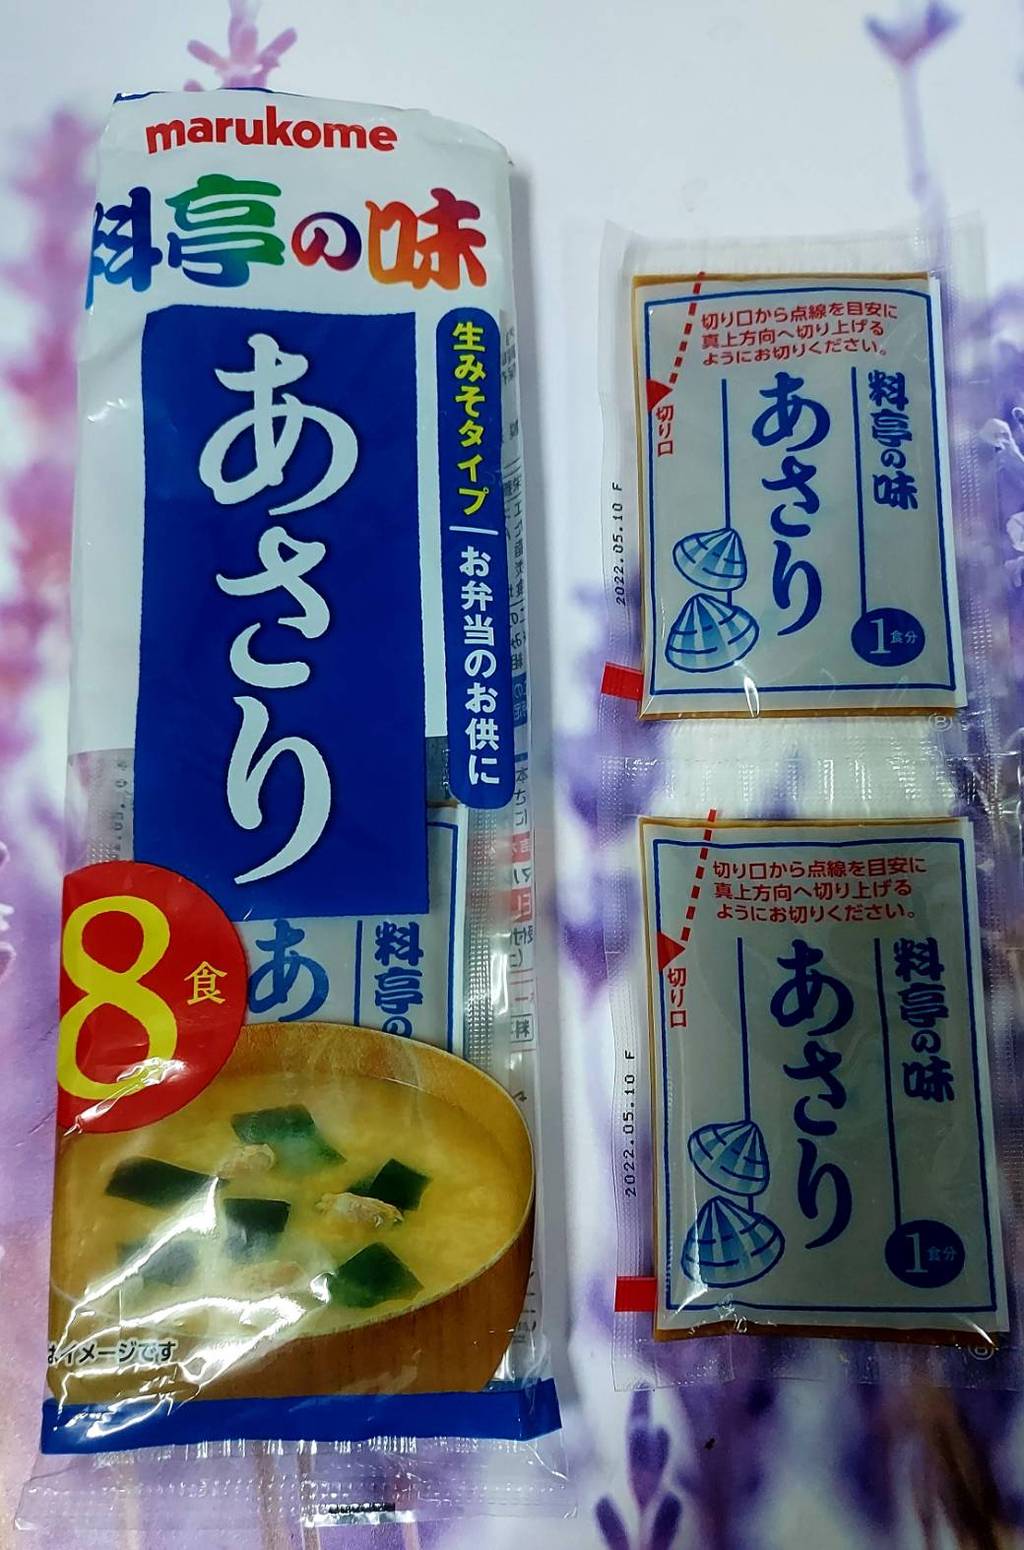 MARUKOME Quick Serve Miso Soup Asari รีวิว